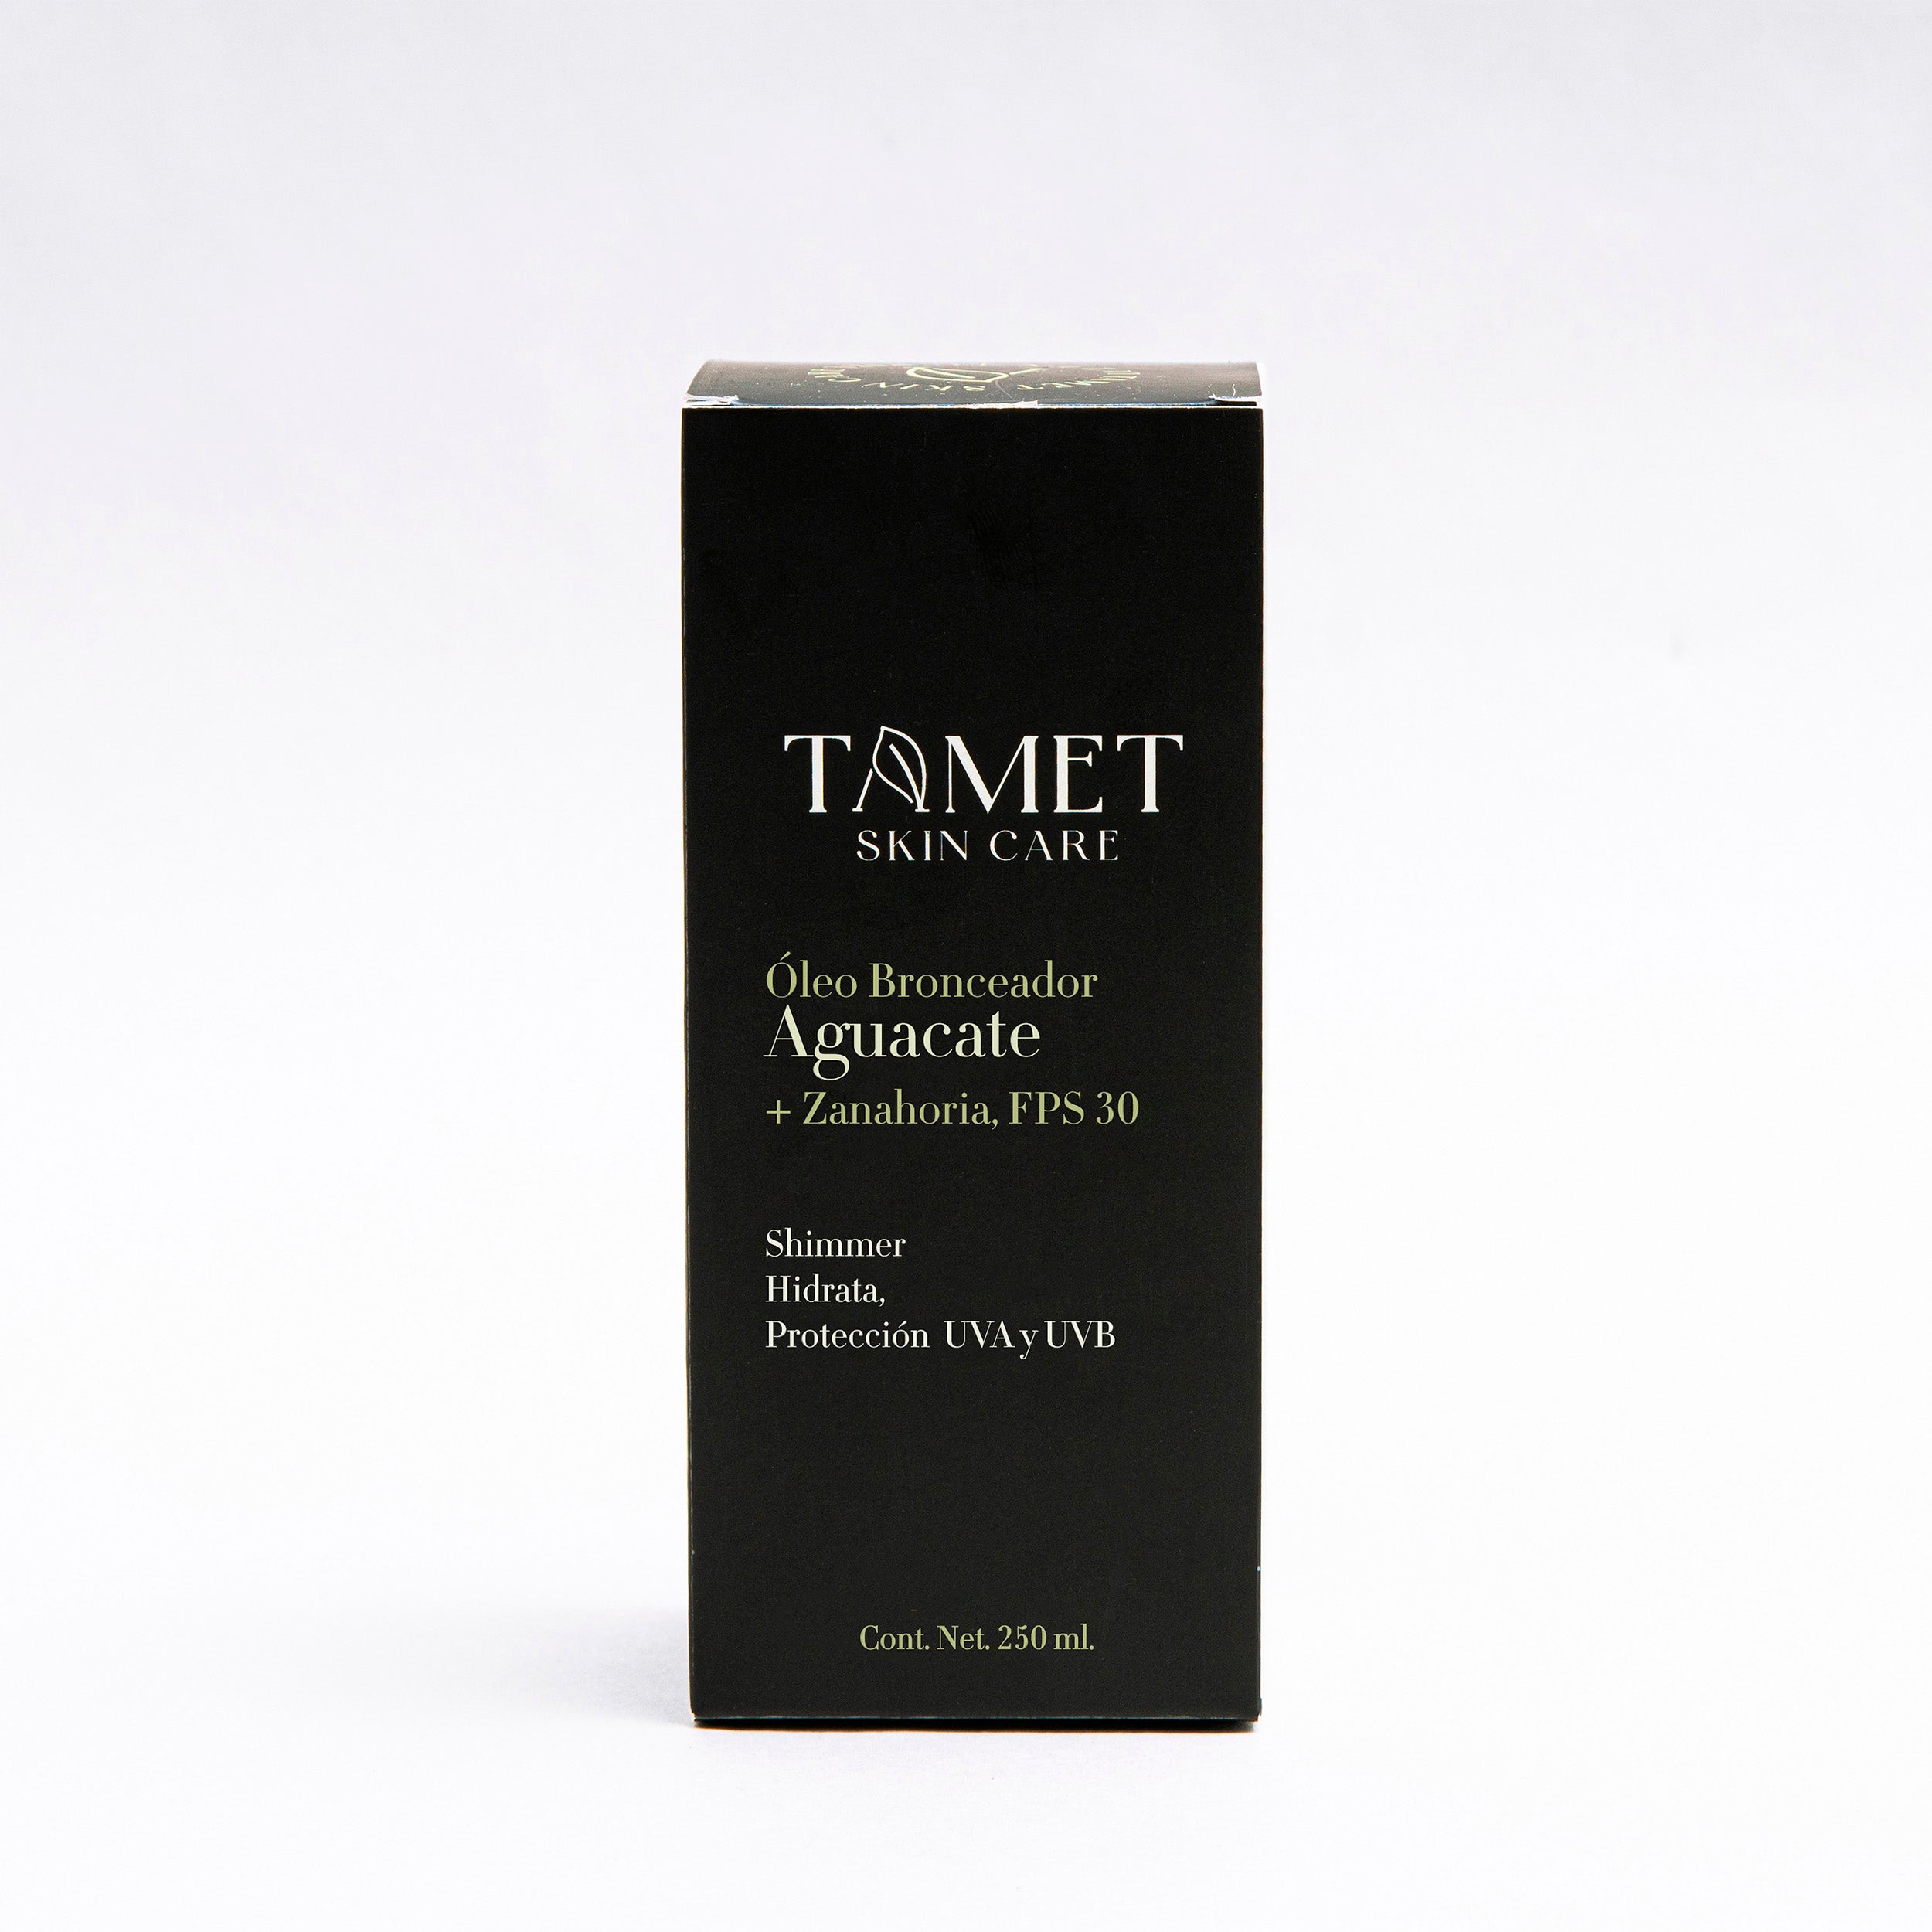 Tamet- Oleo bronceador